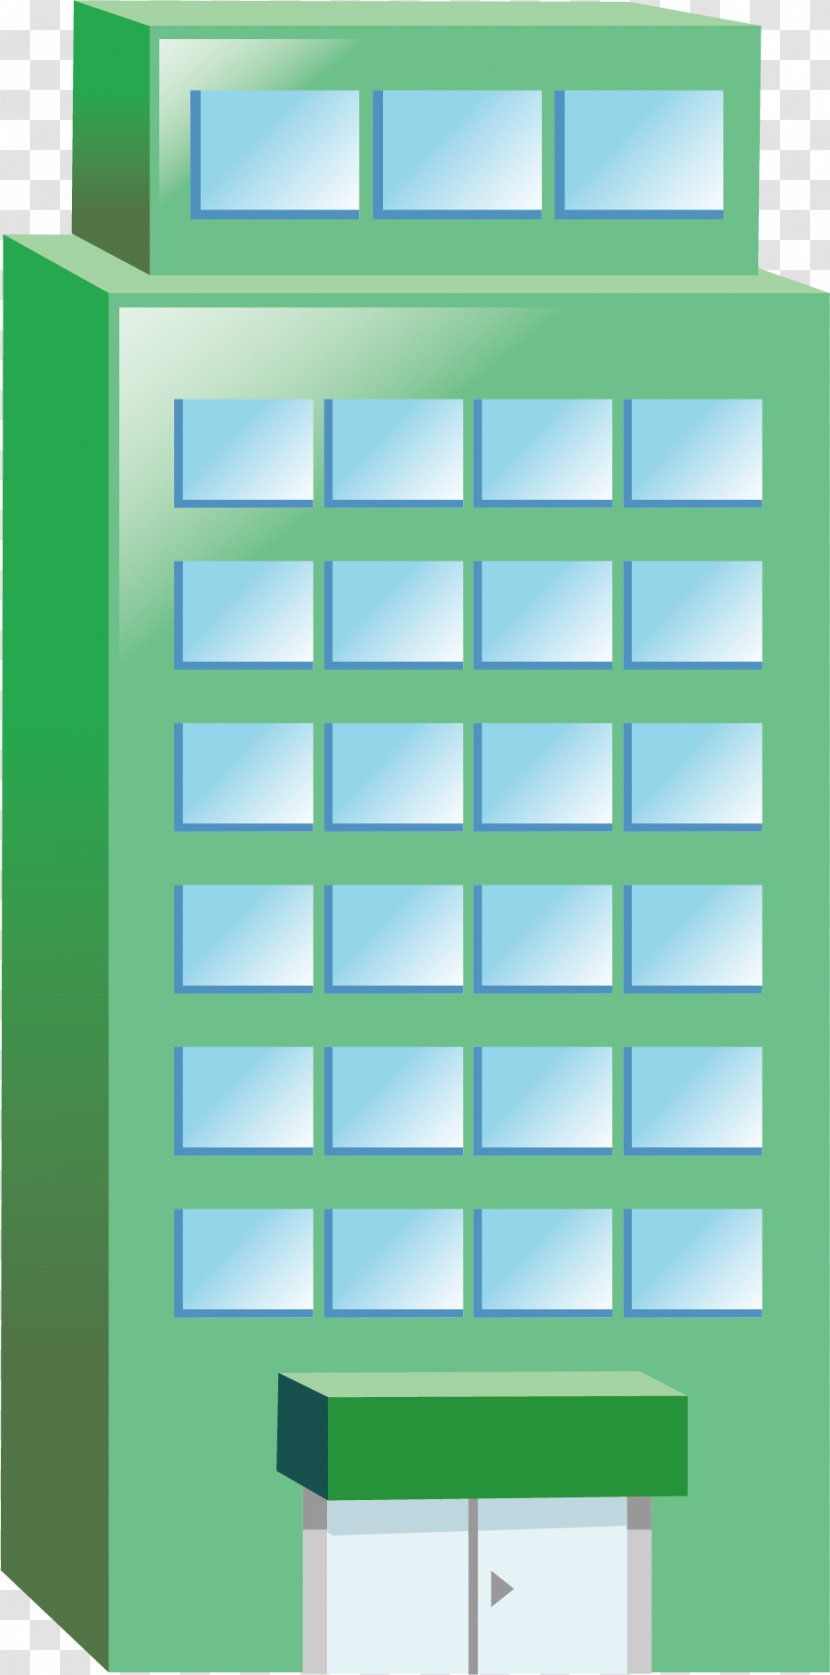 House Cartoon - Flat Design - Green Building Transparent PNG